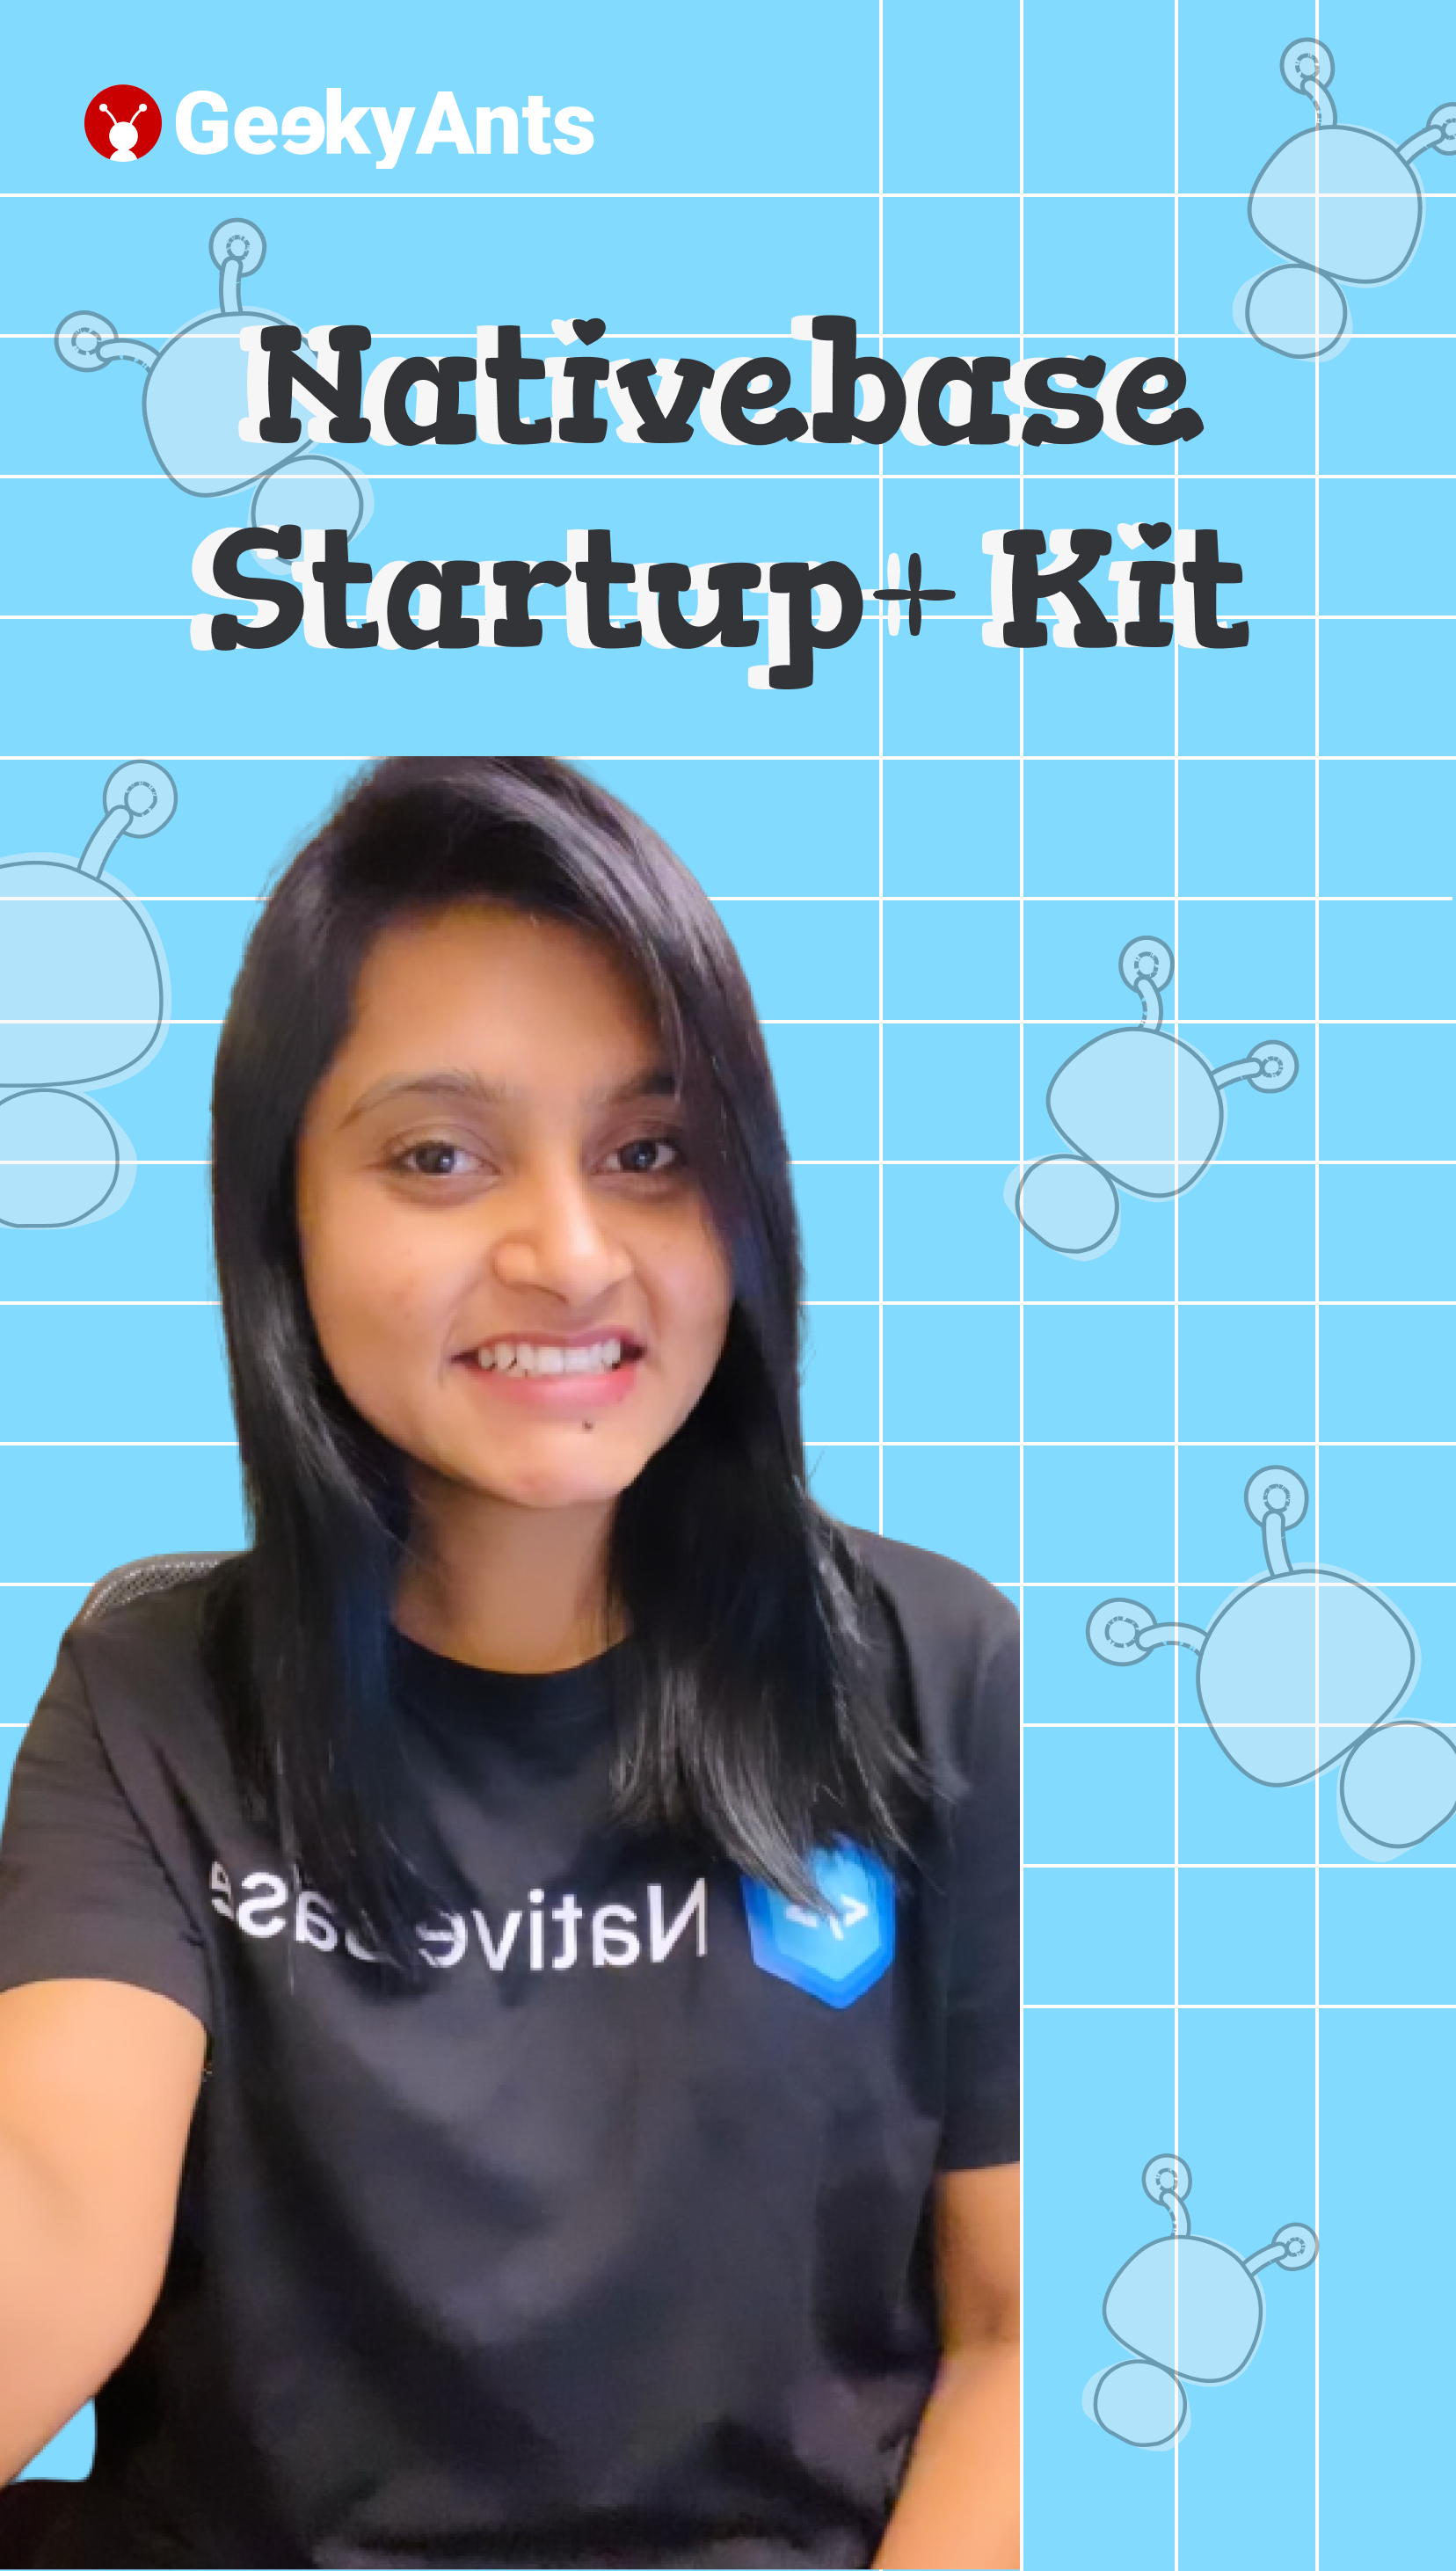 Nativebase Startup+ Kit